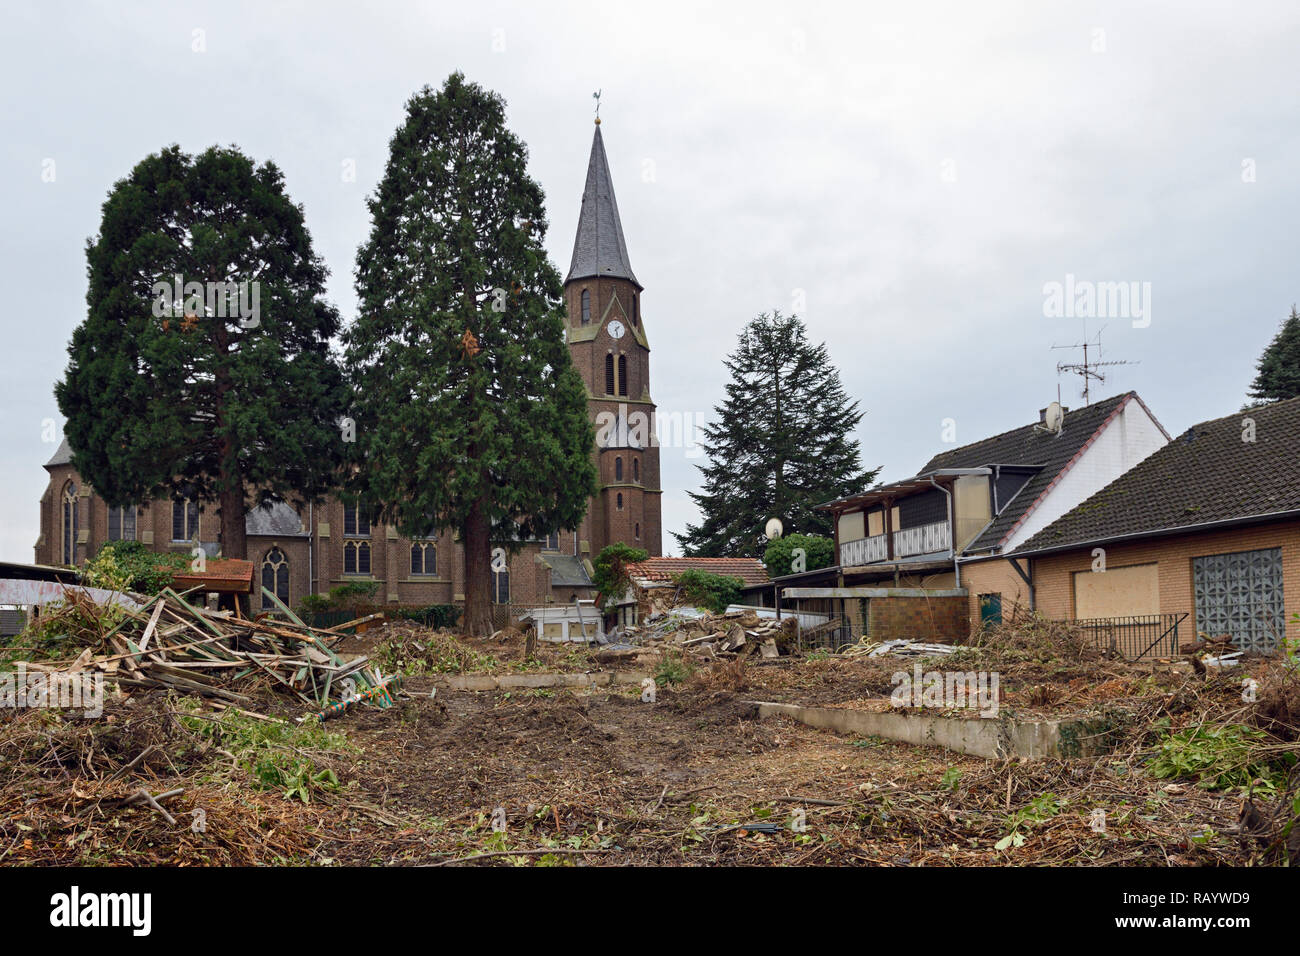 Dicembre 2018, Manheim, Kerpen-Manheim, Renania settentrionale-Vestfalia, Germania - demolizione della chiesa San Albertus e case abbandonate Foto Stock